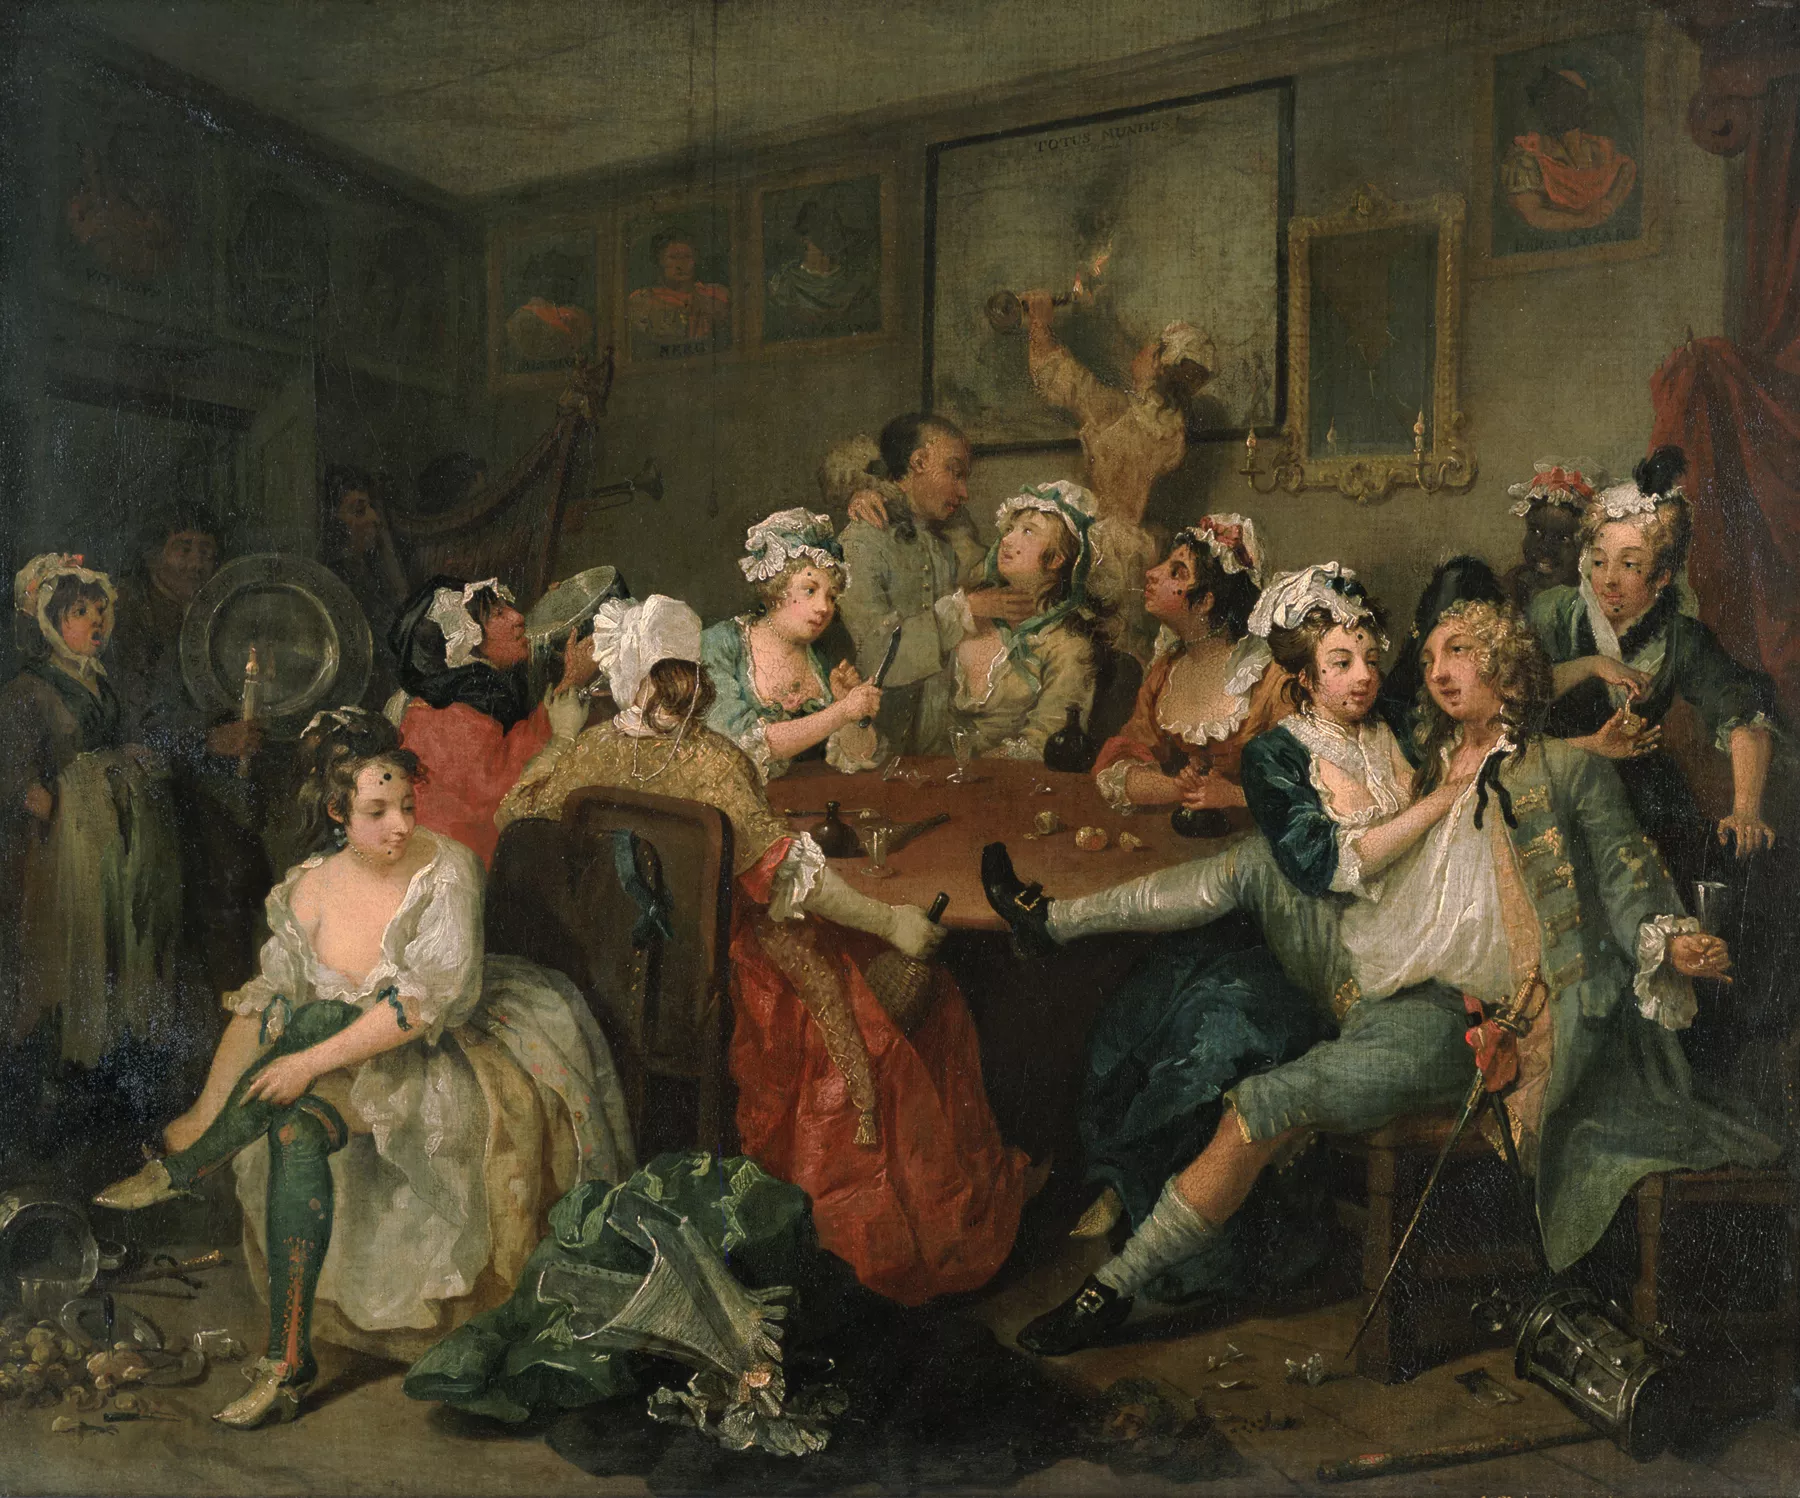 Prostitutes en una taverna anglesa del segle XVIII, l’època en què els pre- servatius es van començar a utilitzar per evitar malalties venèries